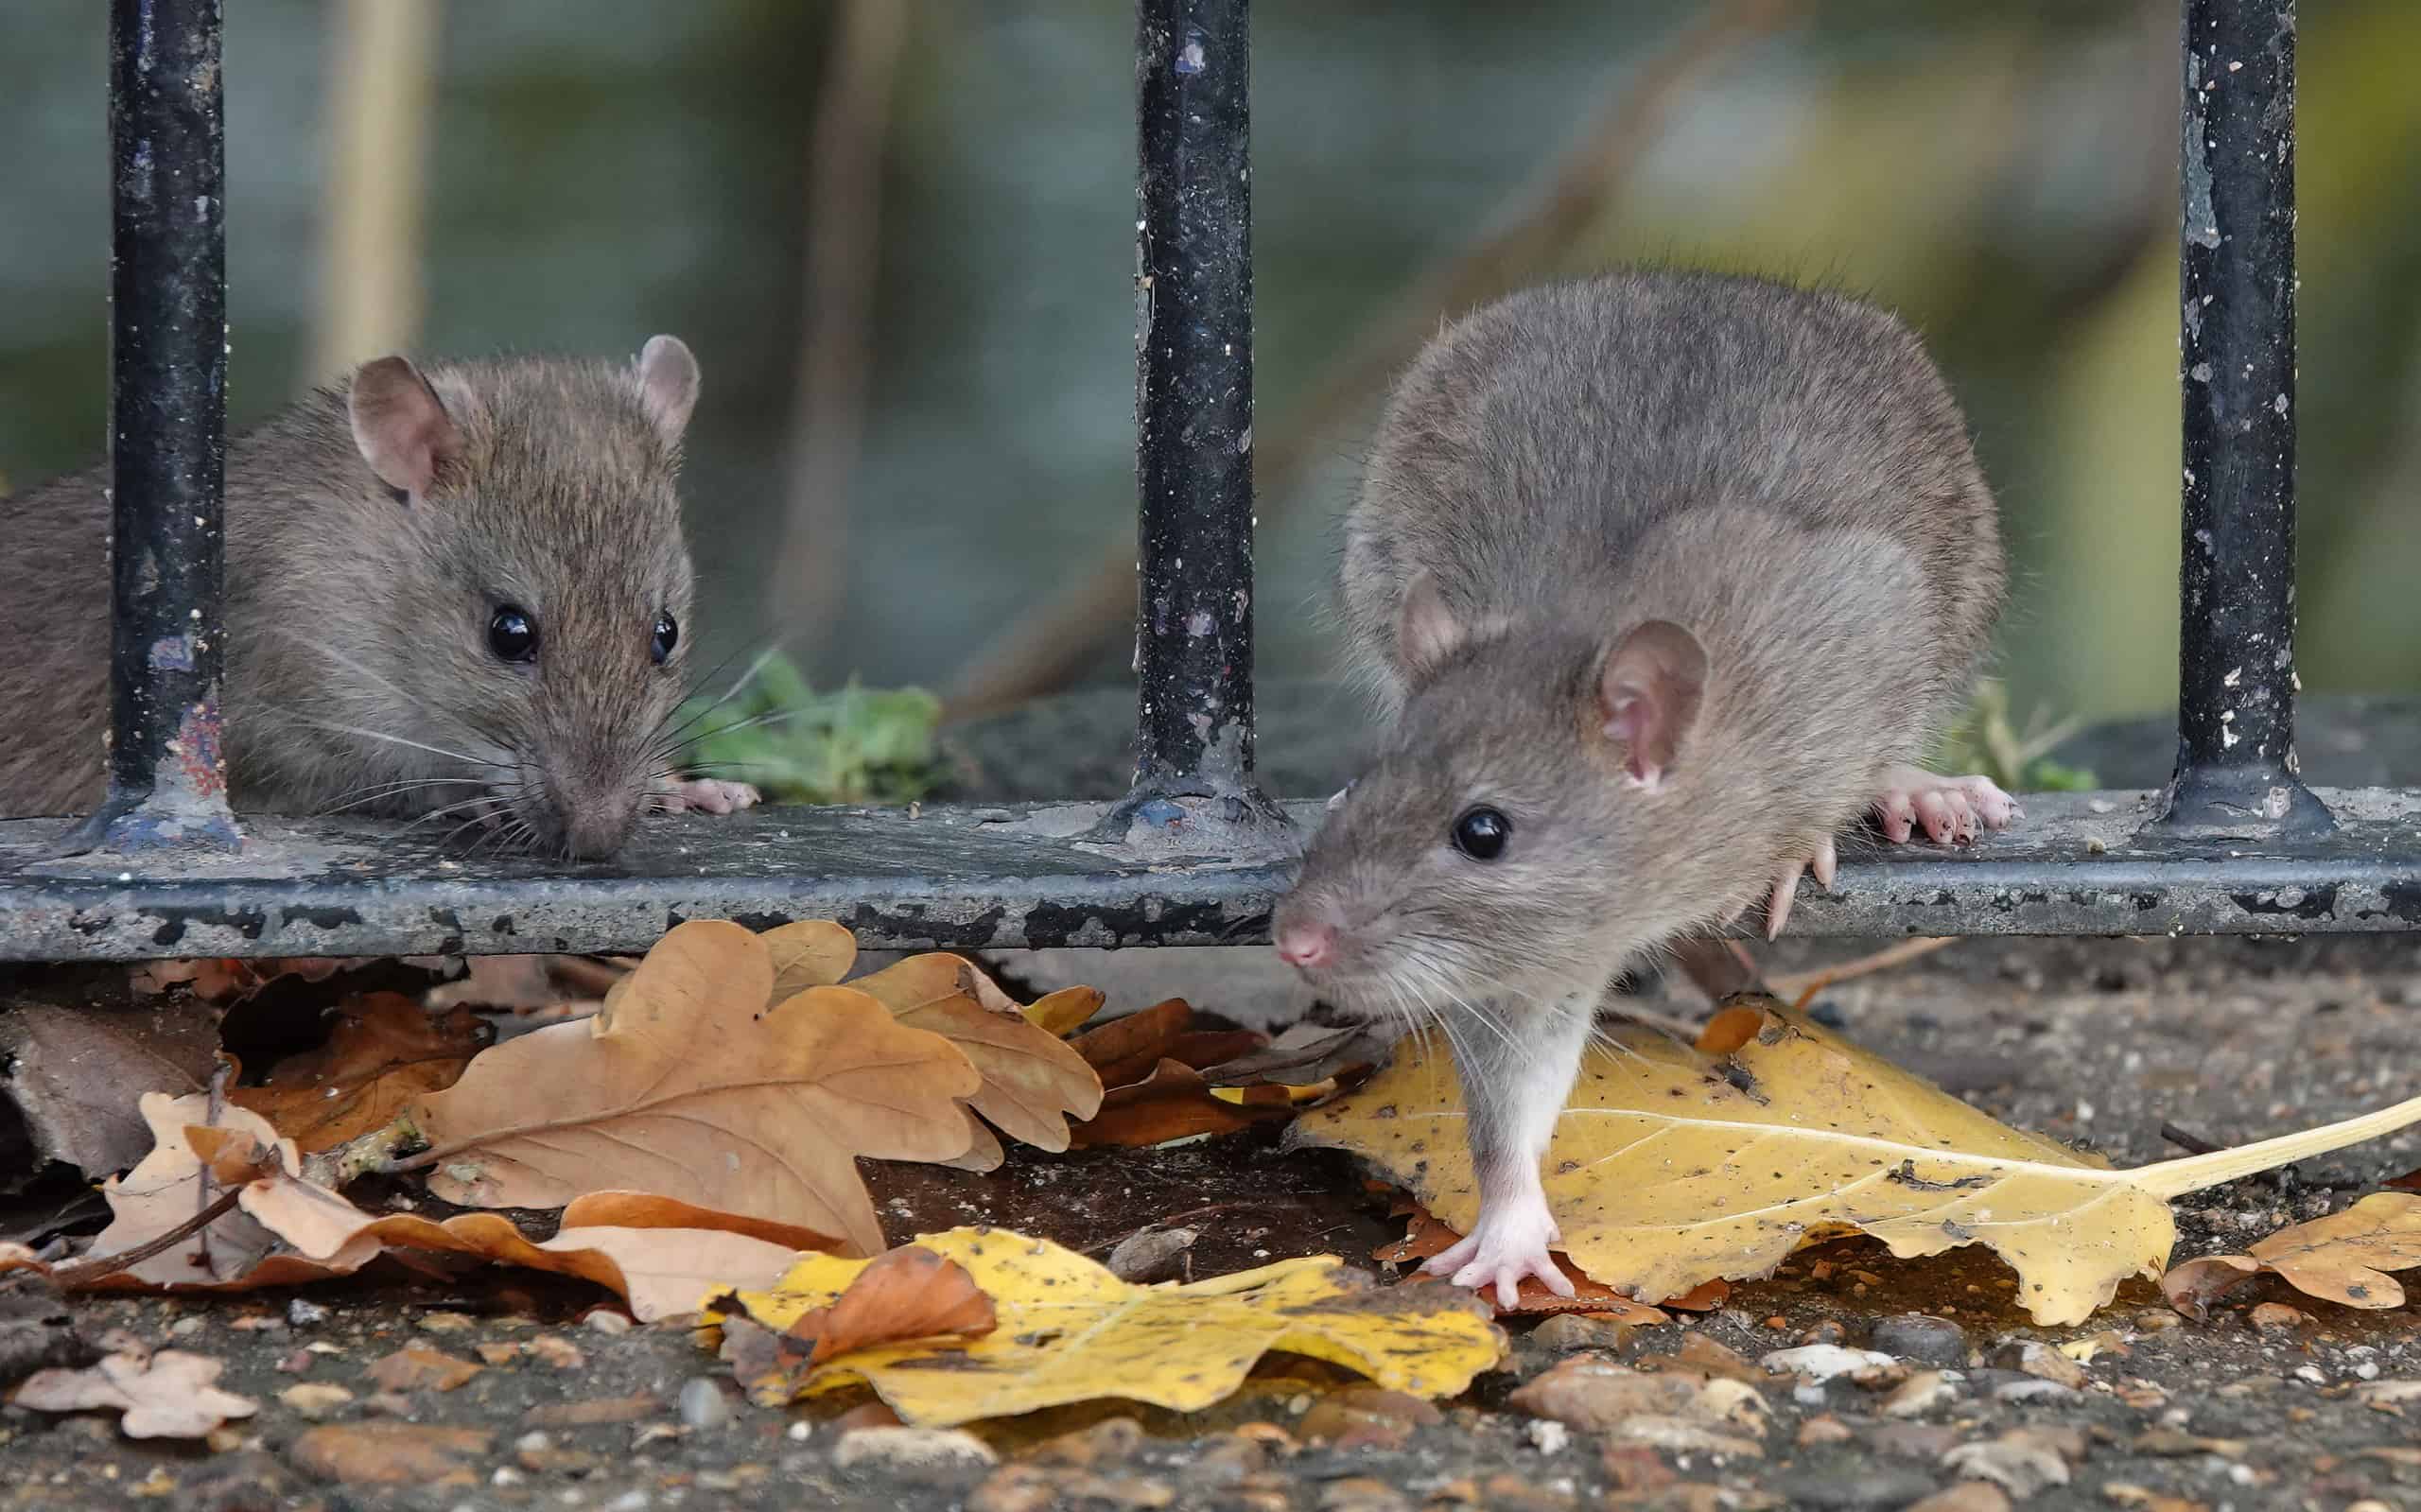 Uno scatto delizioso di due ratti marroni che attraversano la ringhiera di una recinzione in un parco in una giornata autunnale.